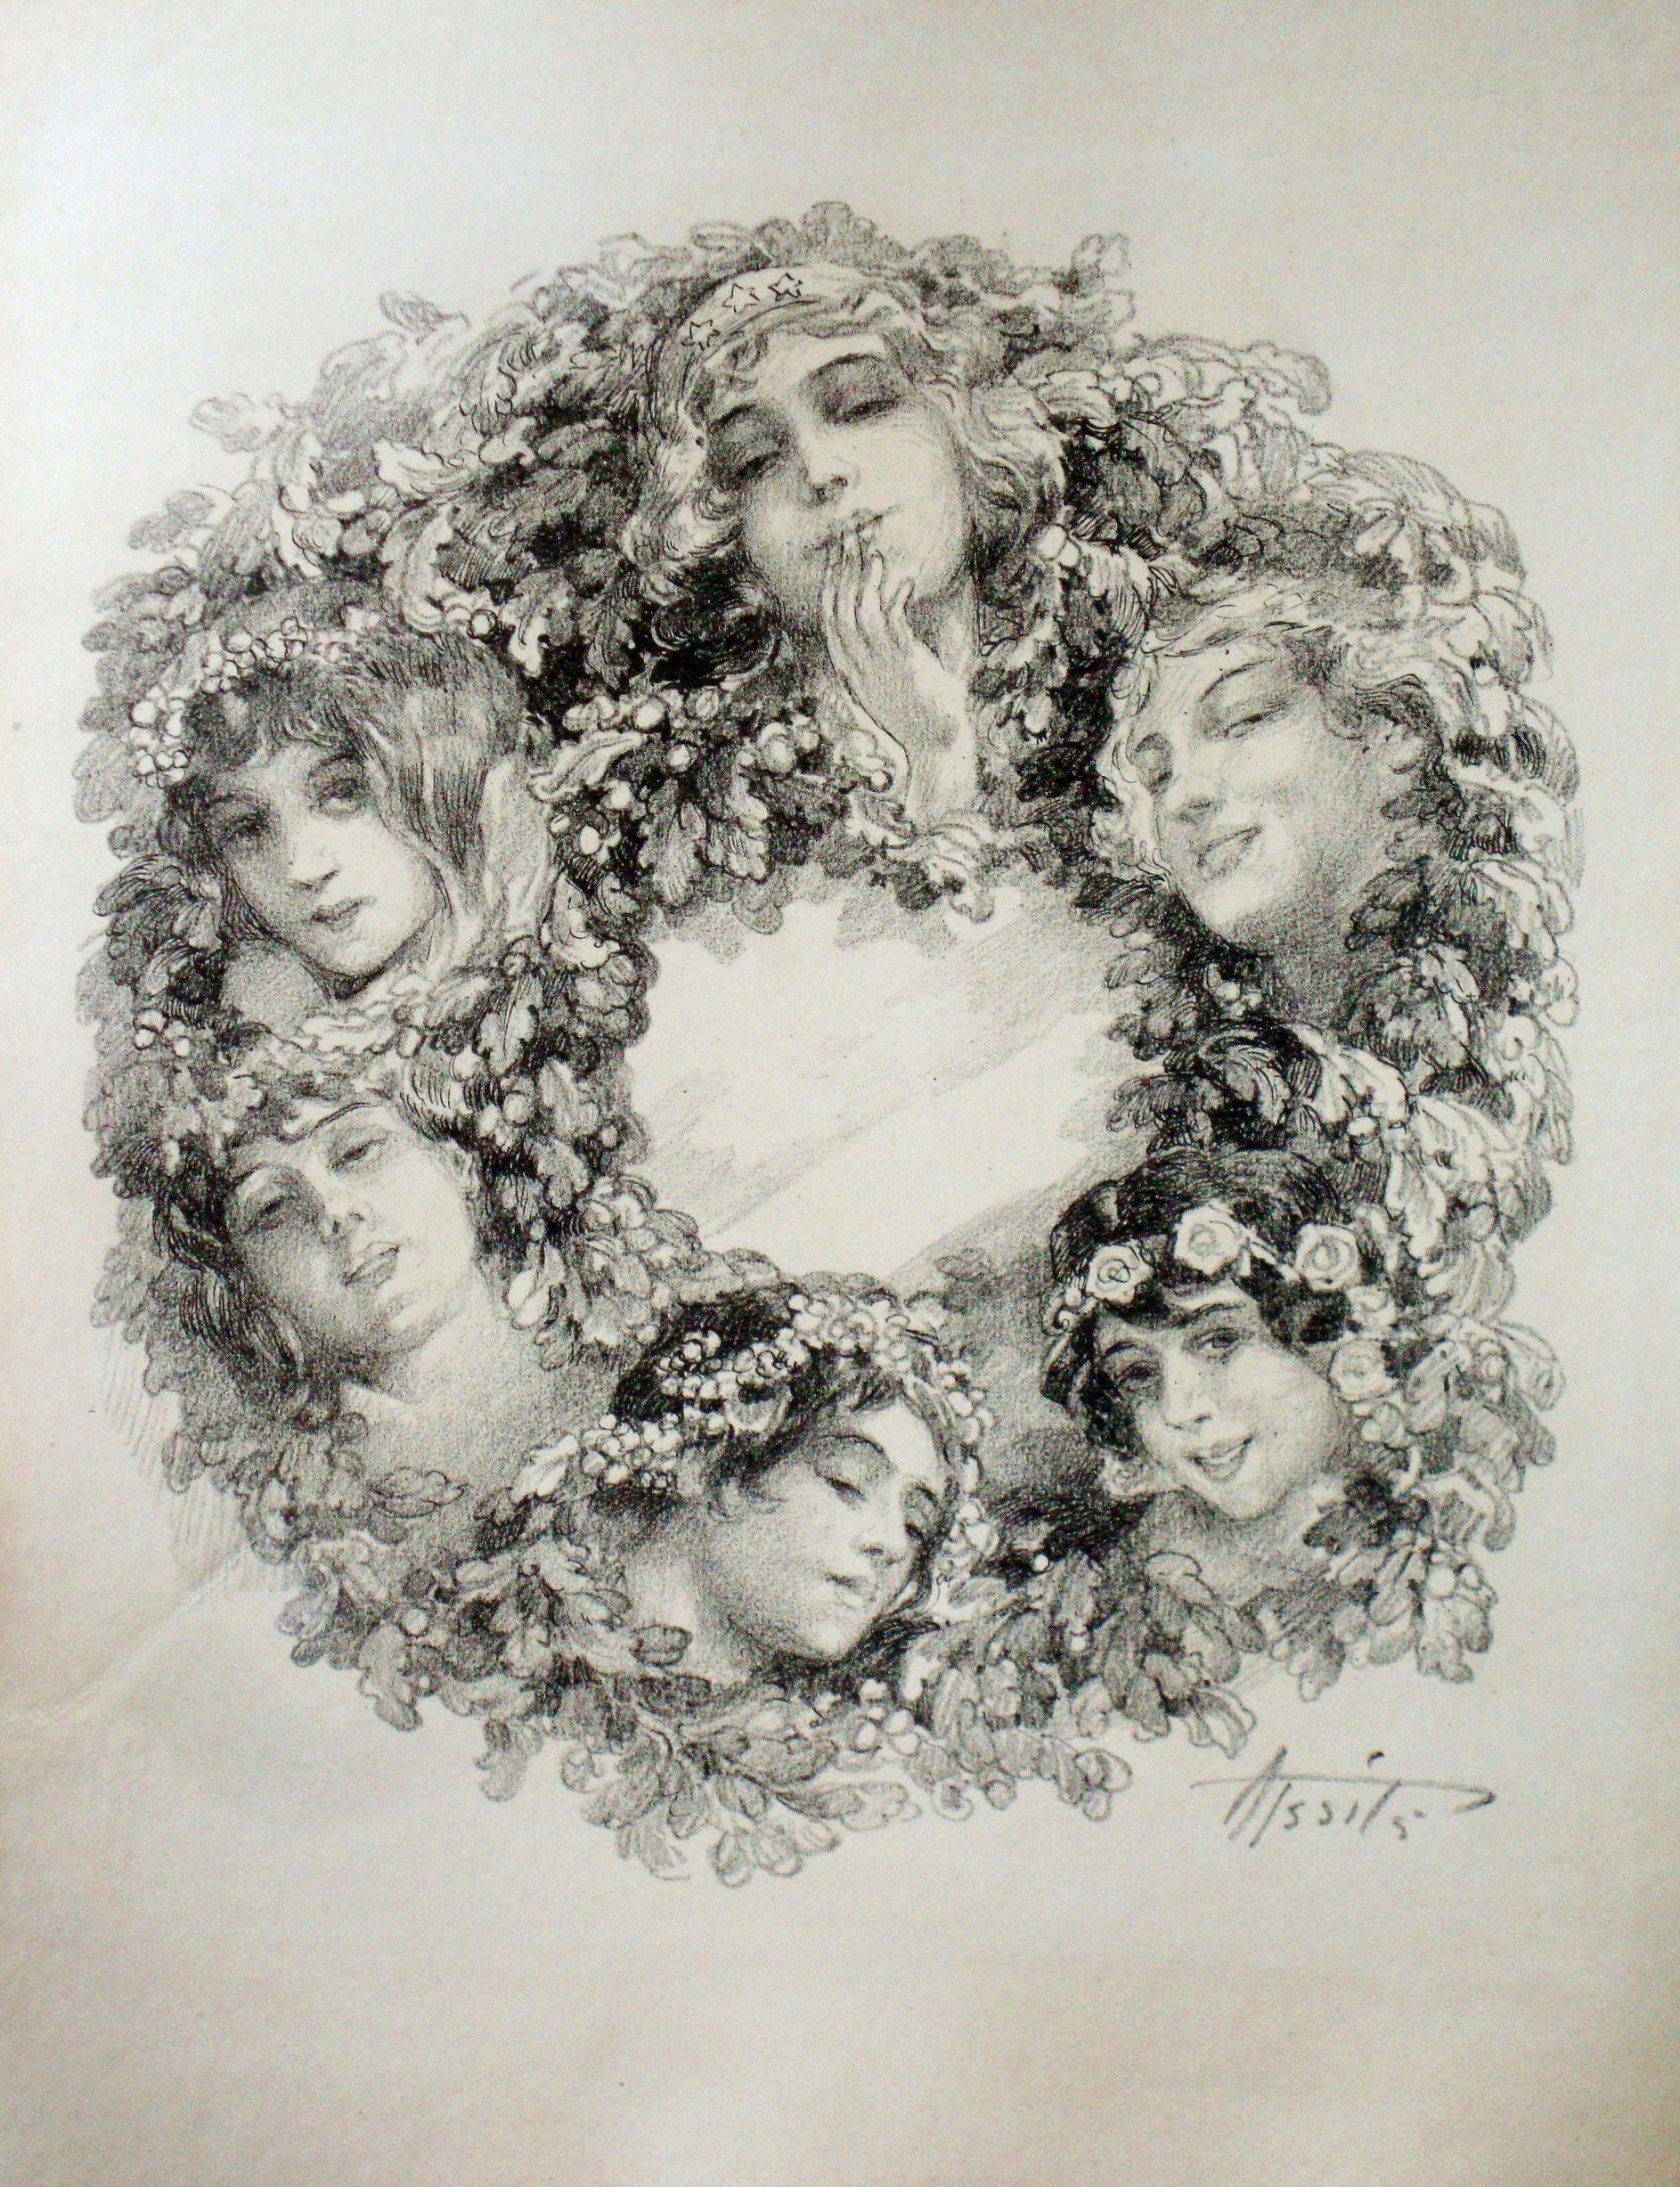 Aleksandrs Apsitis Figurative Print - Wreath. Paper, lithograph, 29x24 cm